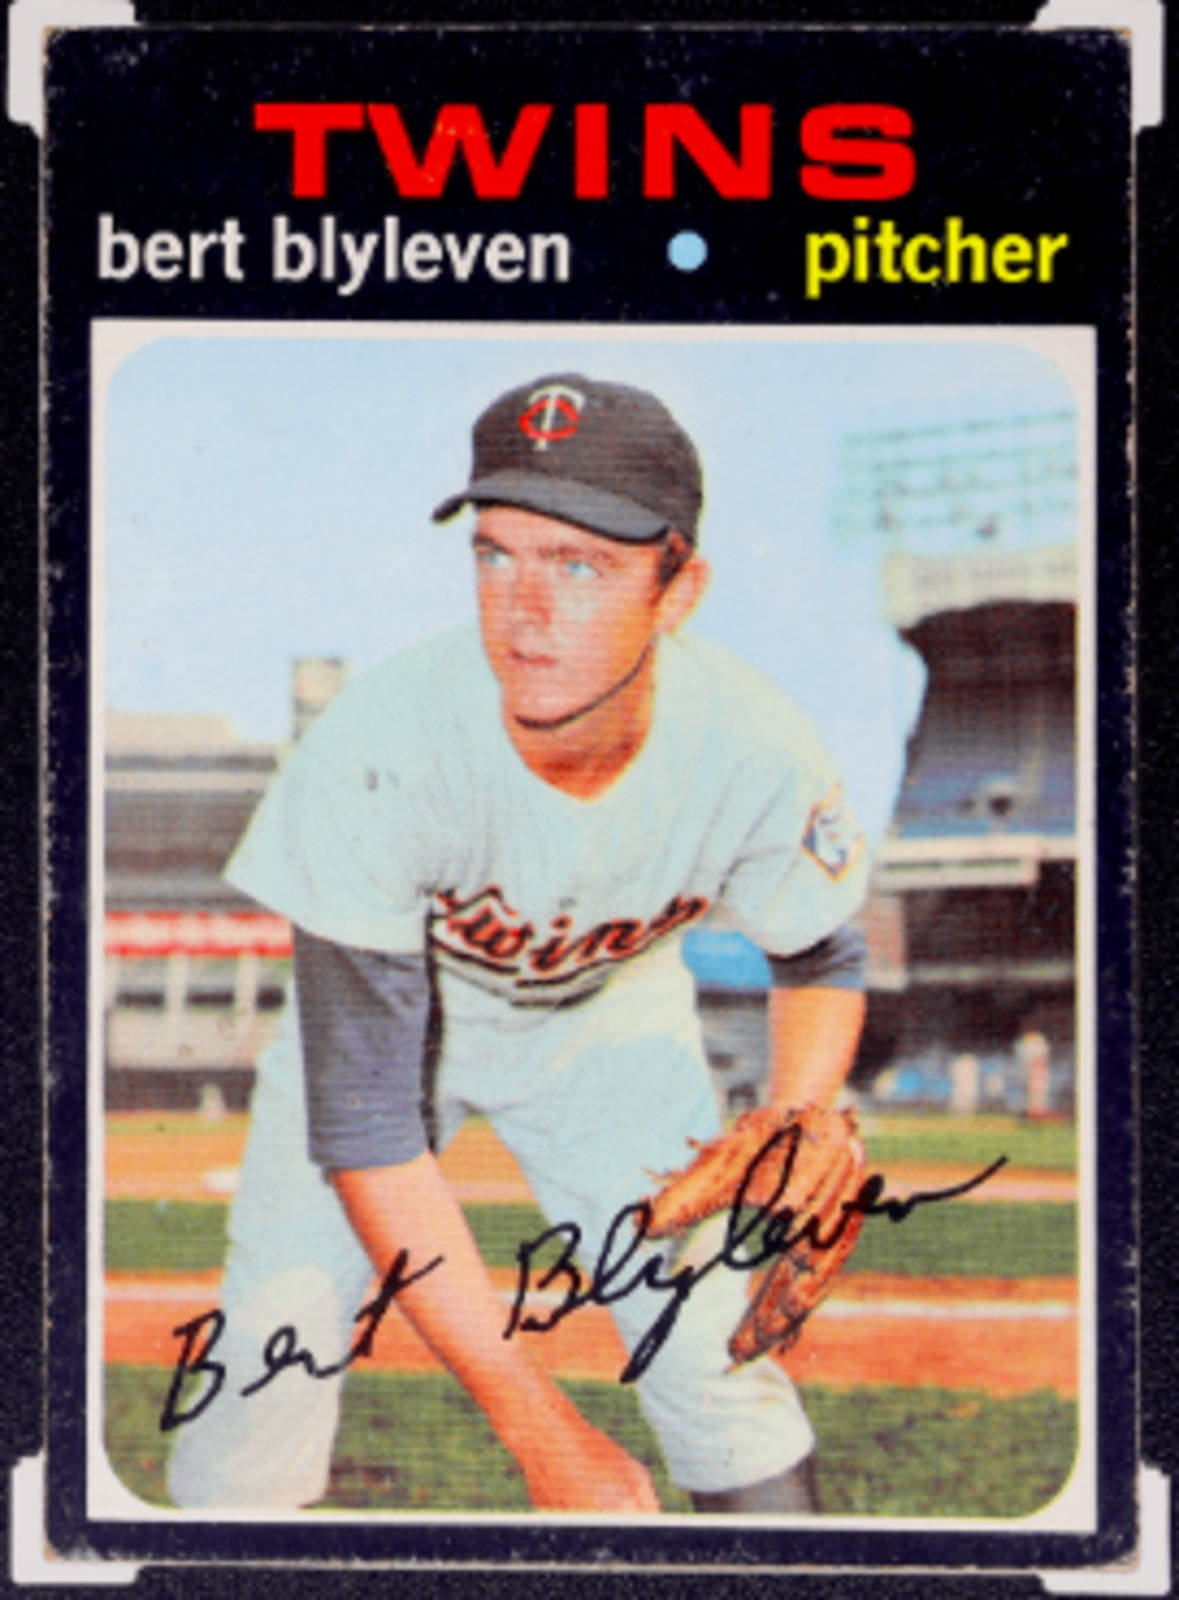 1971 Topps Bert Blyleven rookie card